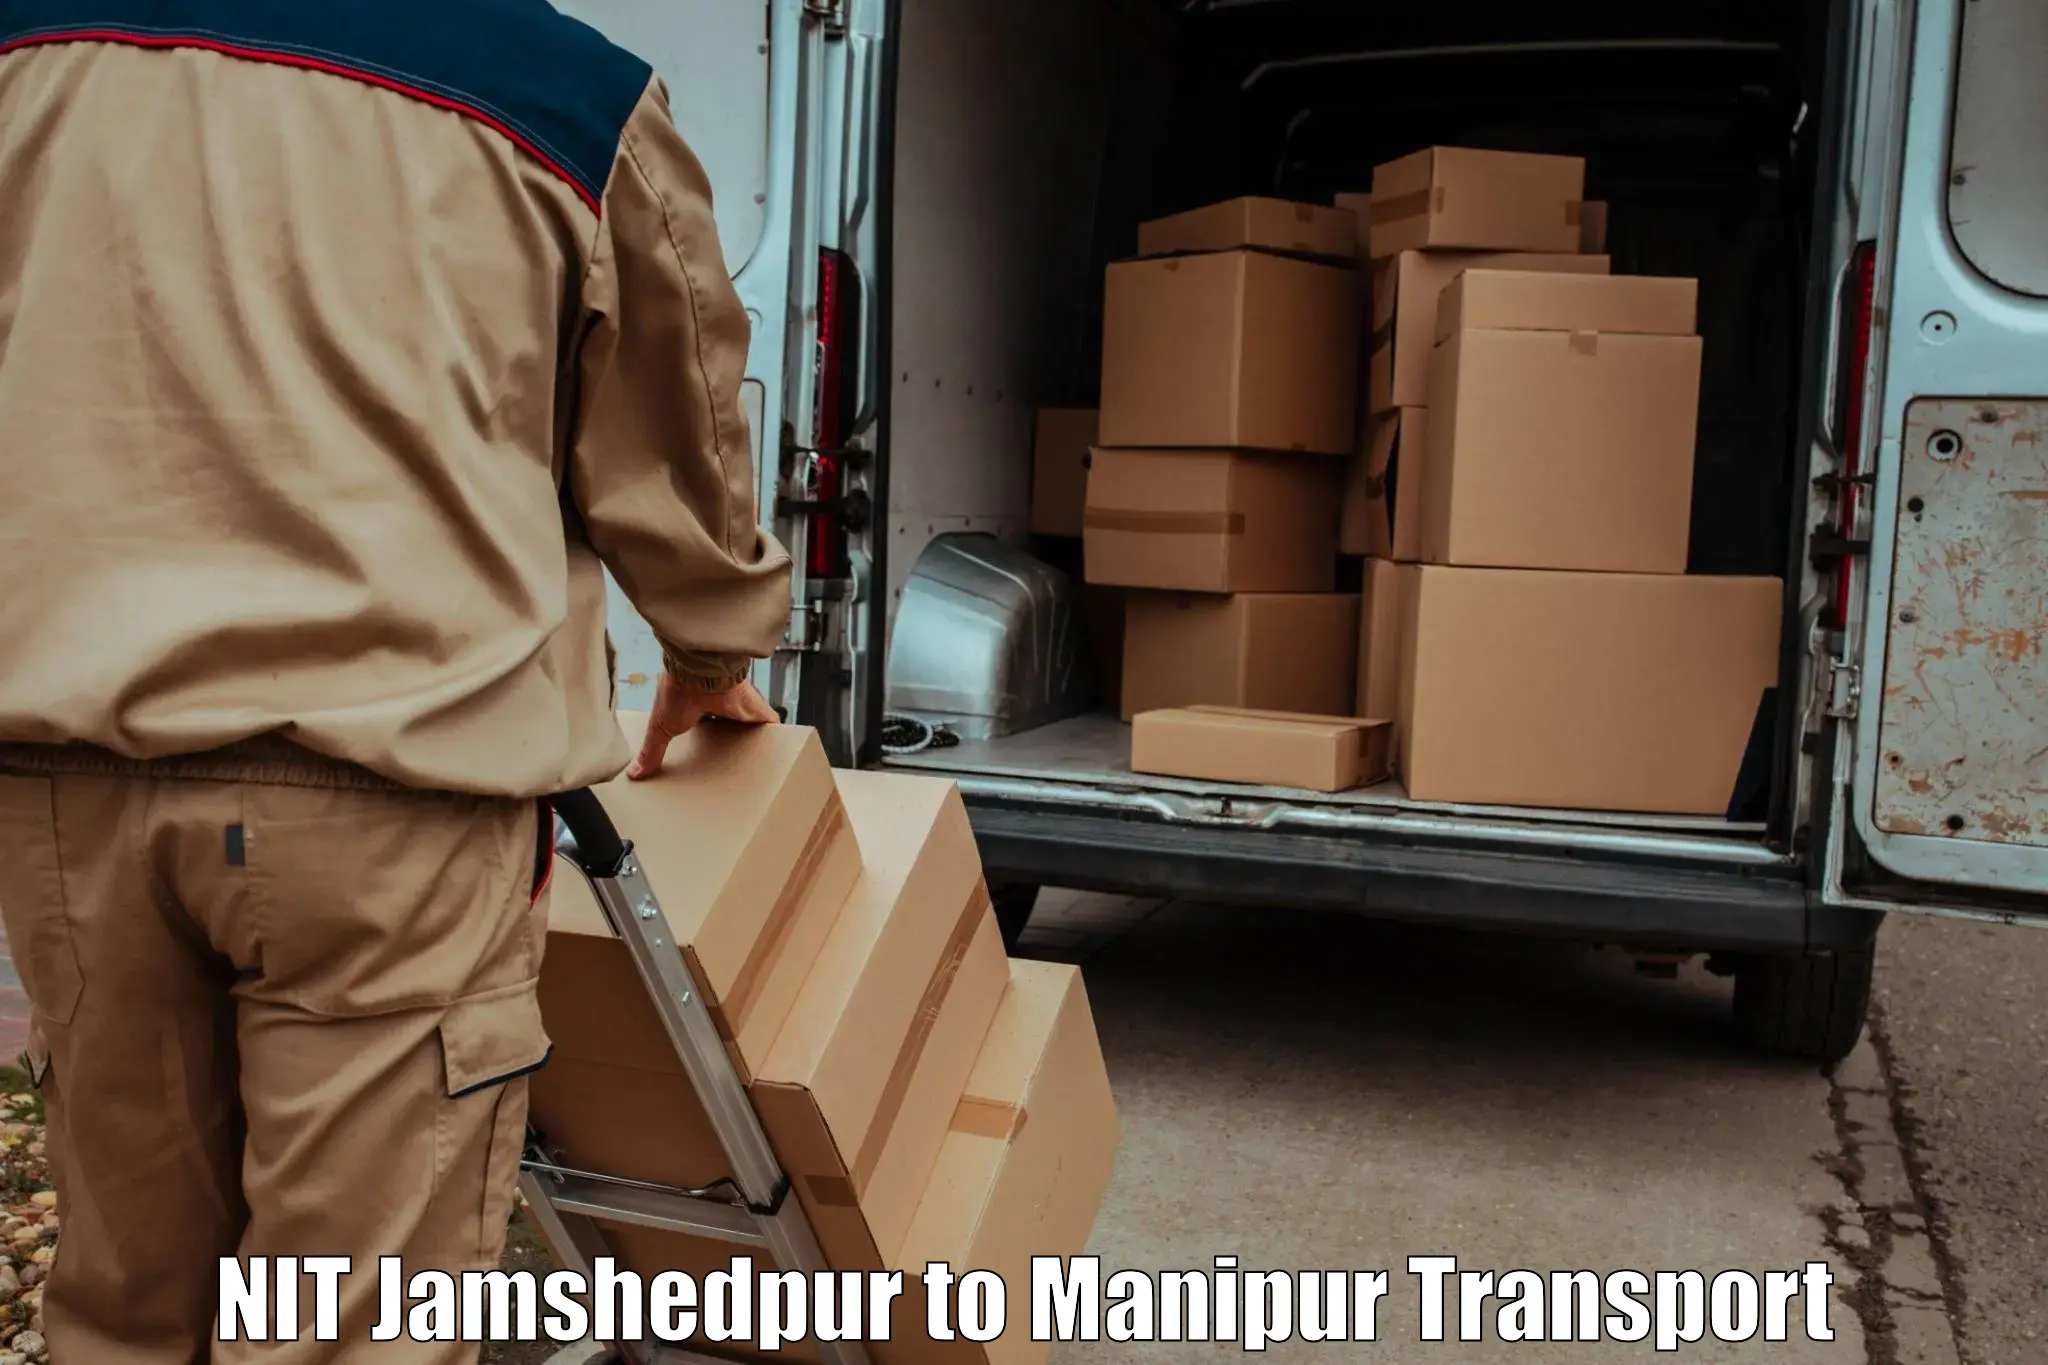 Land transport services NIT Jamshedpur to Imphal